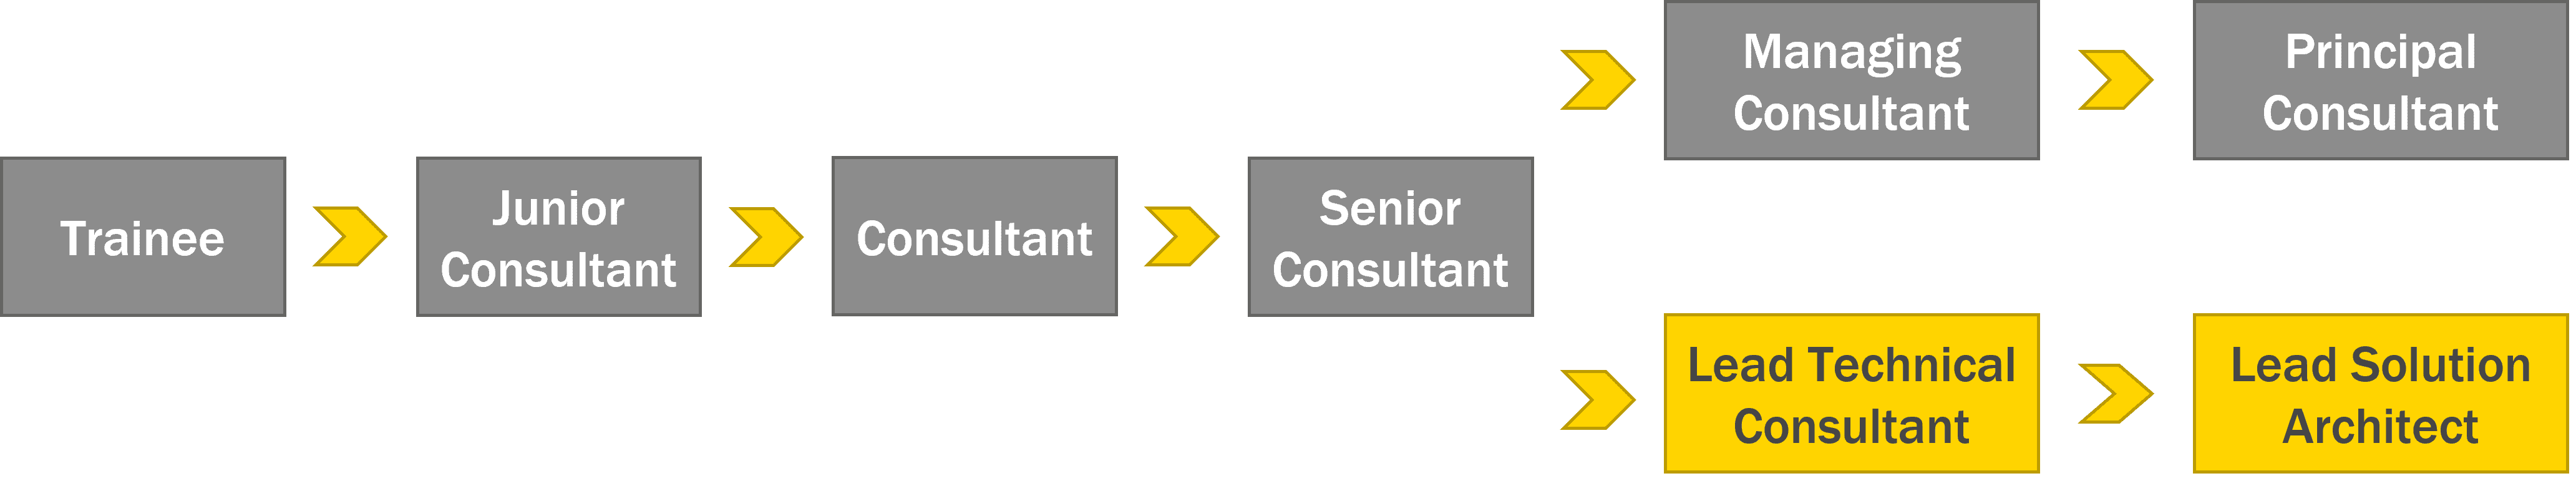 Stufen des Karrierepfades vom Trainee bis zum Principal Consultant bzw. Lead Solution Architect